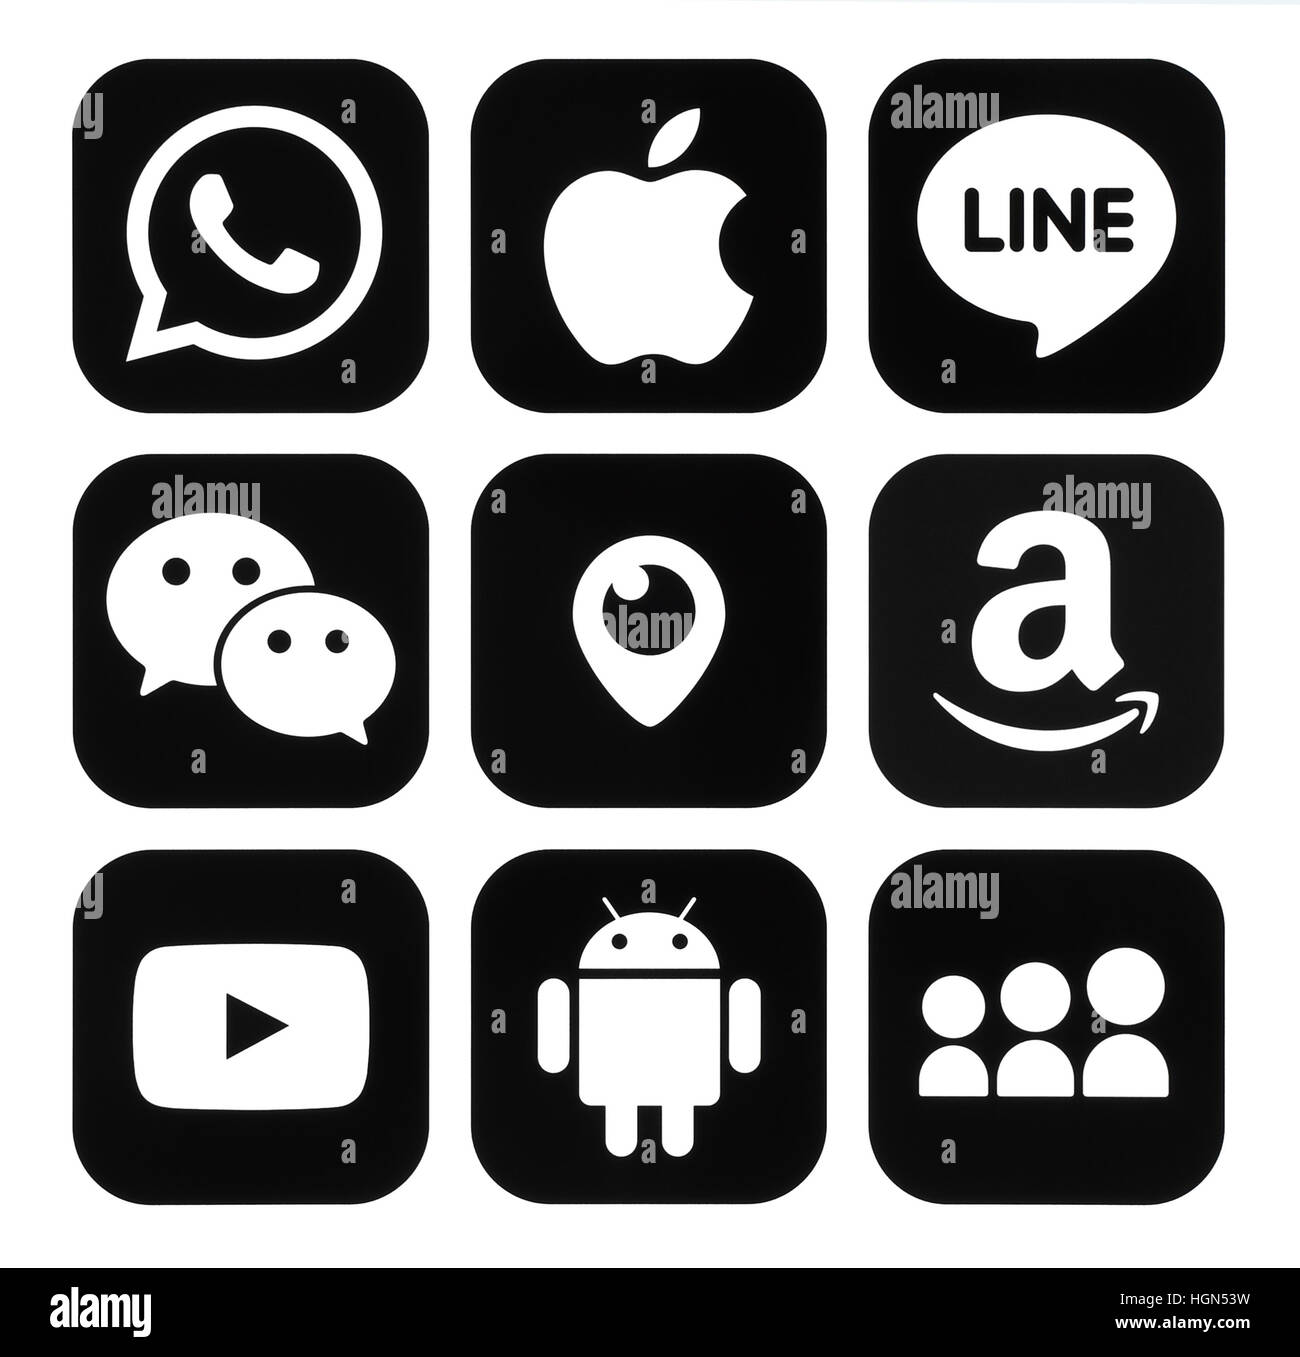 Kiew, Ukraine - 7. November 2016: Sammlung von beliebten mobilen apps  schwarze Logos auf Papier gedruckt: Viber, Apple, Line, WeChat, Periskop,  Amazon, Youtu Stockfotografie - Alamy